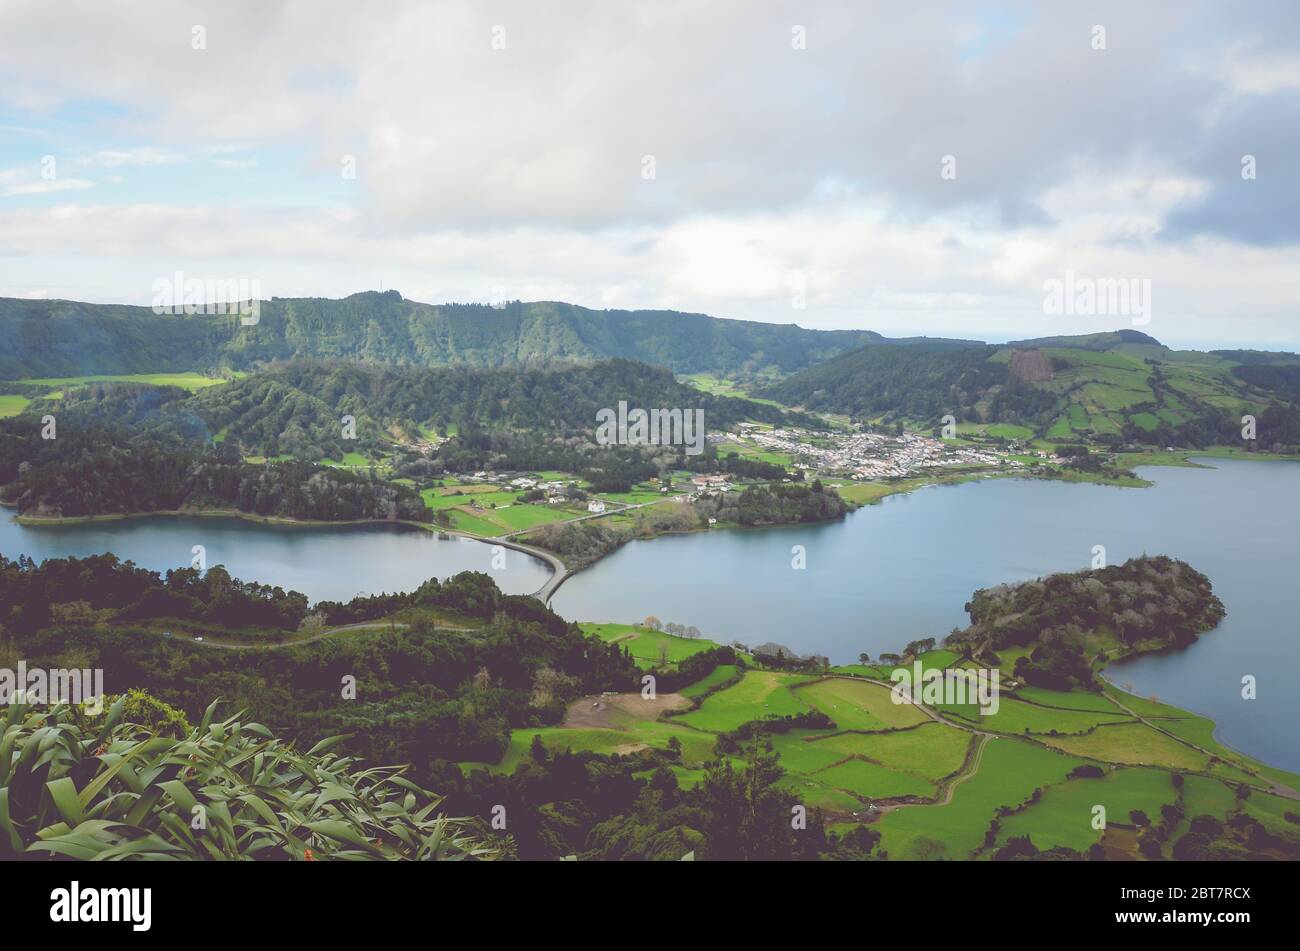 Vista increíble de la Lagoa Azul y el pueblo Sete Cidades desde el mirador Miradouro do cerrado das Freiras en Azores, Portugal. Lagos rodeados de campos verdes y bosques. Foto horizontal. Foto de stock